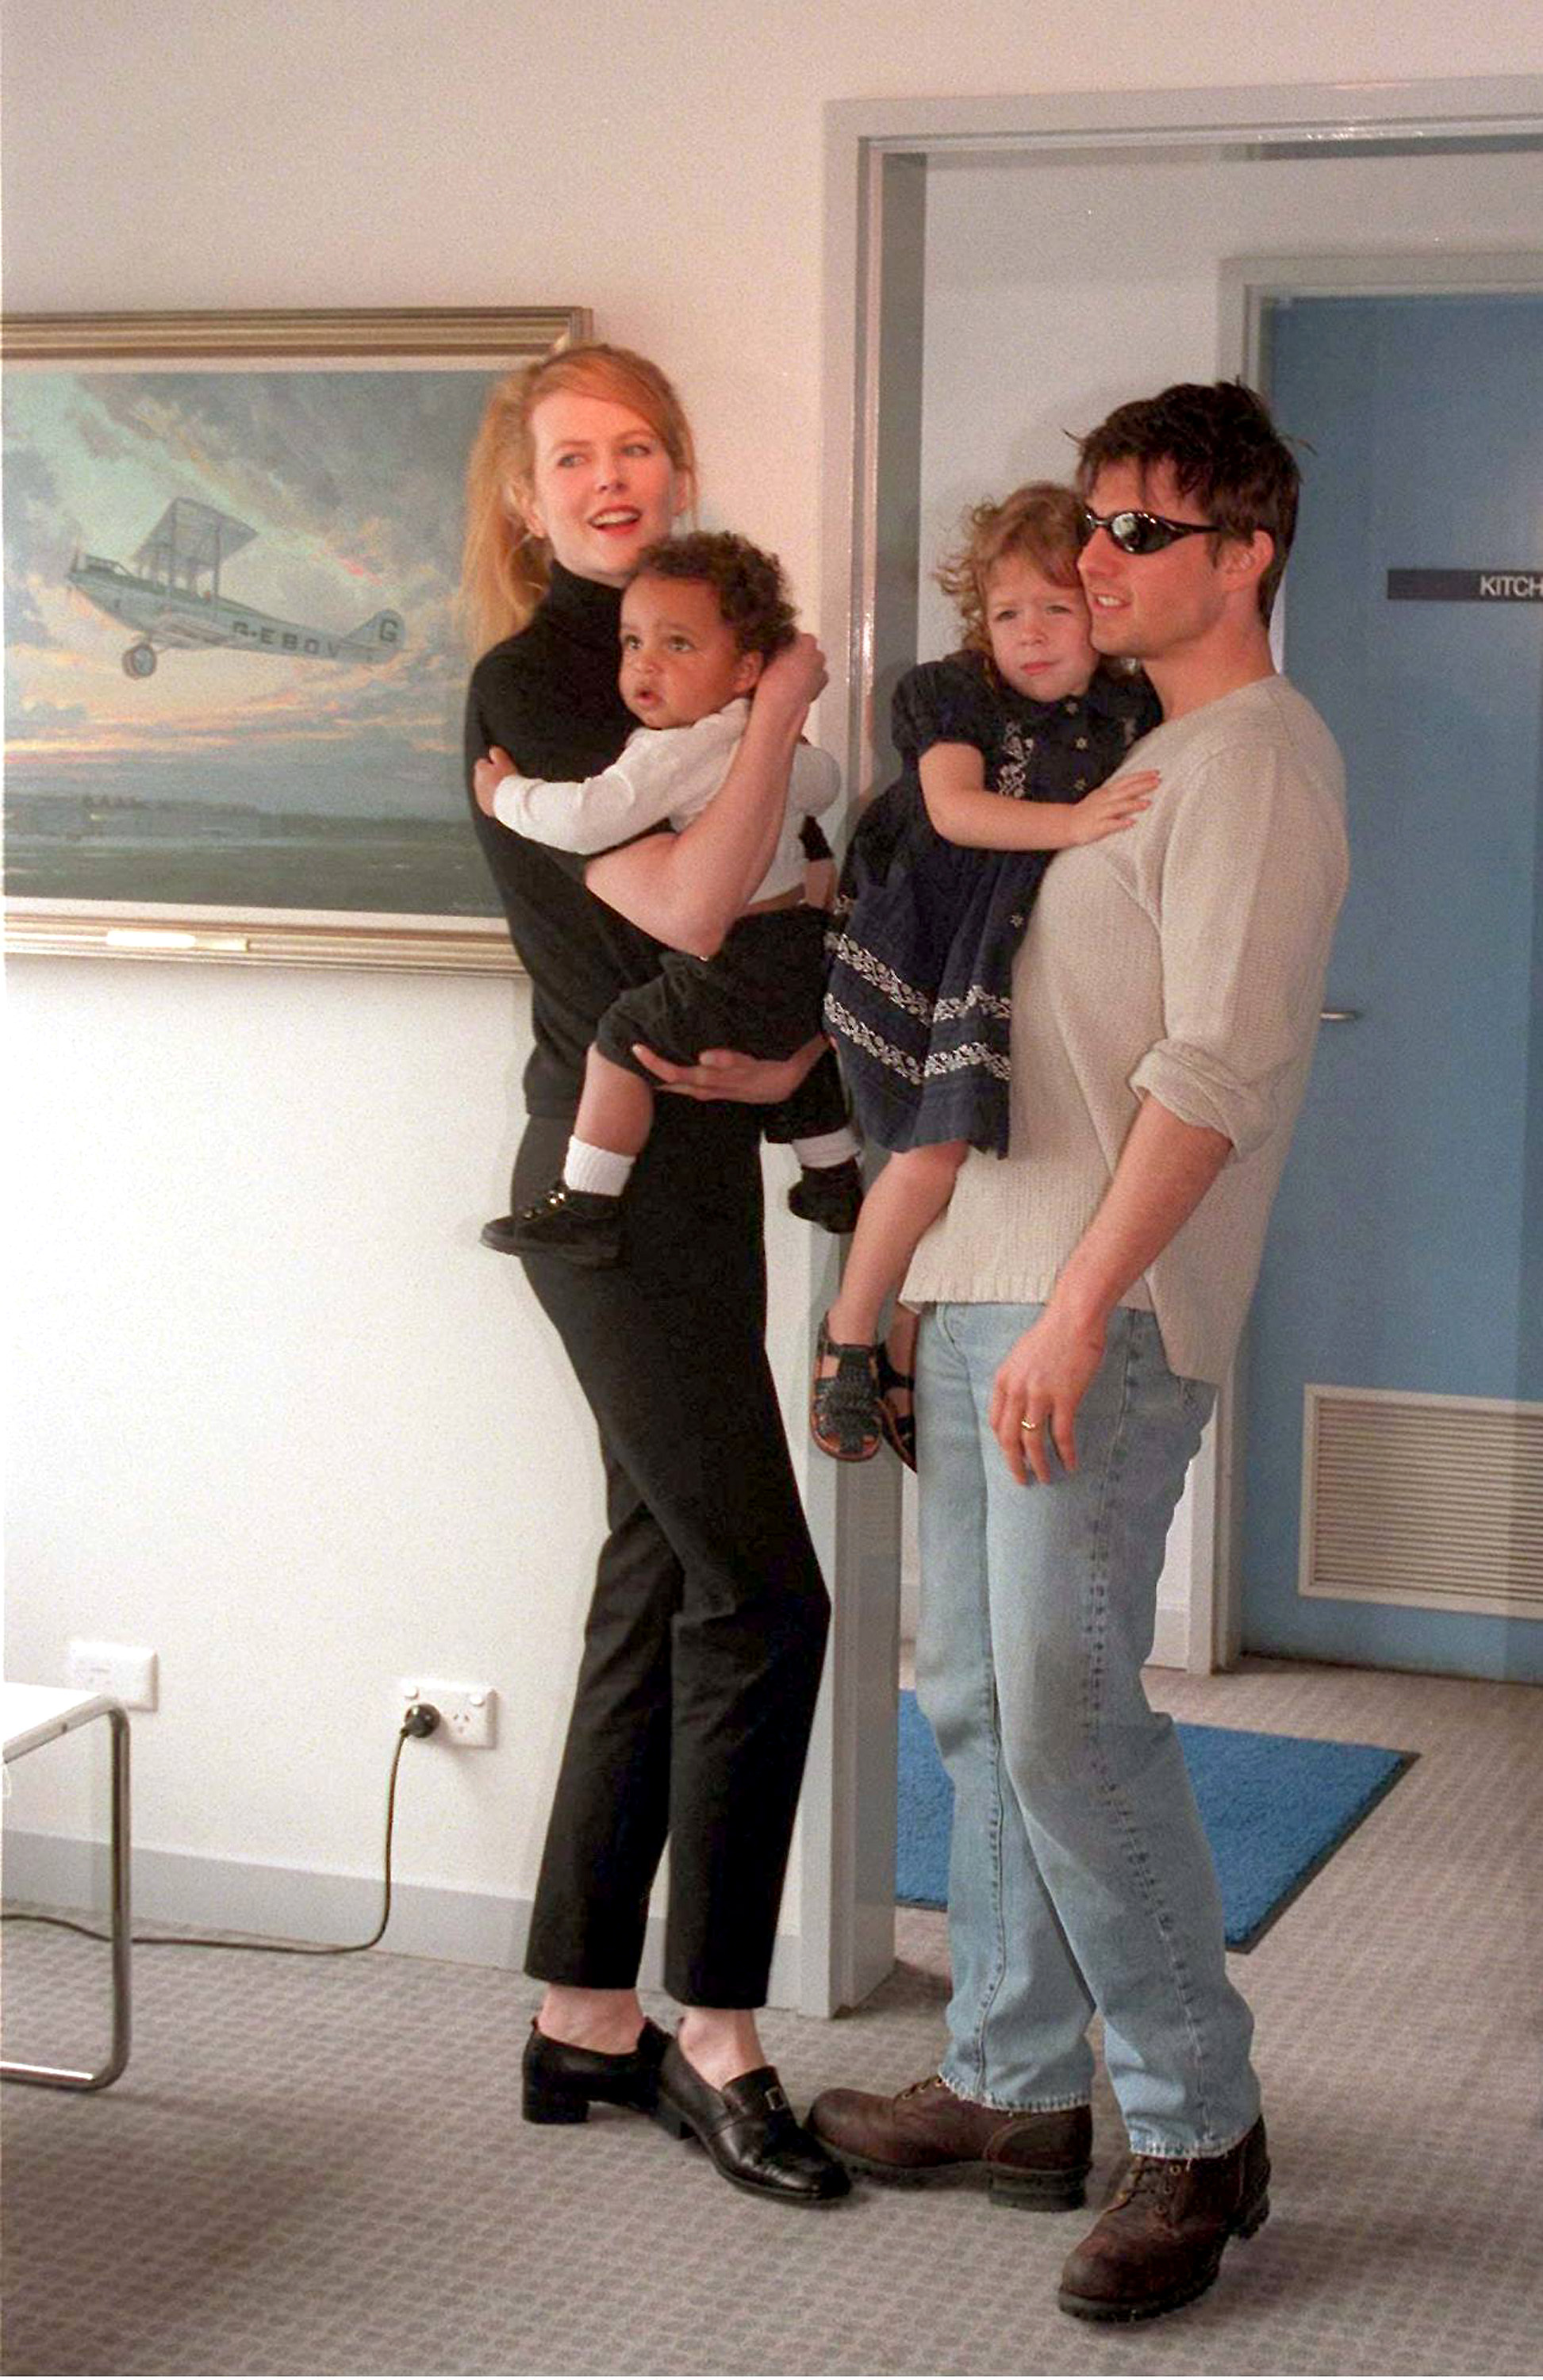 Nicole Kidman y Tom Cruise con Isabella y Connor Cruise en el aeropuerto Kingsford Smith de Sydney y presentan a sus hijos Connor e Isabella a los medios de comunicación 24 de enero de 1996 | Fuente: Getty Images